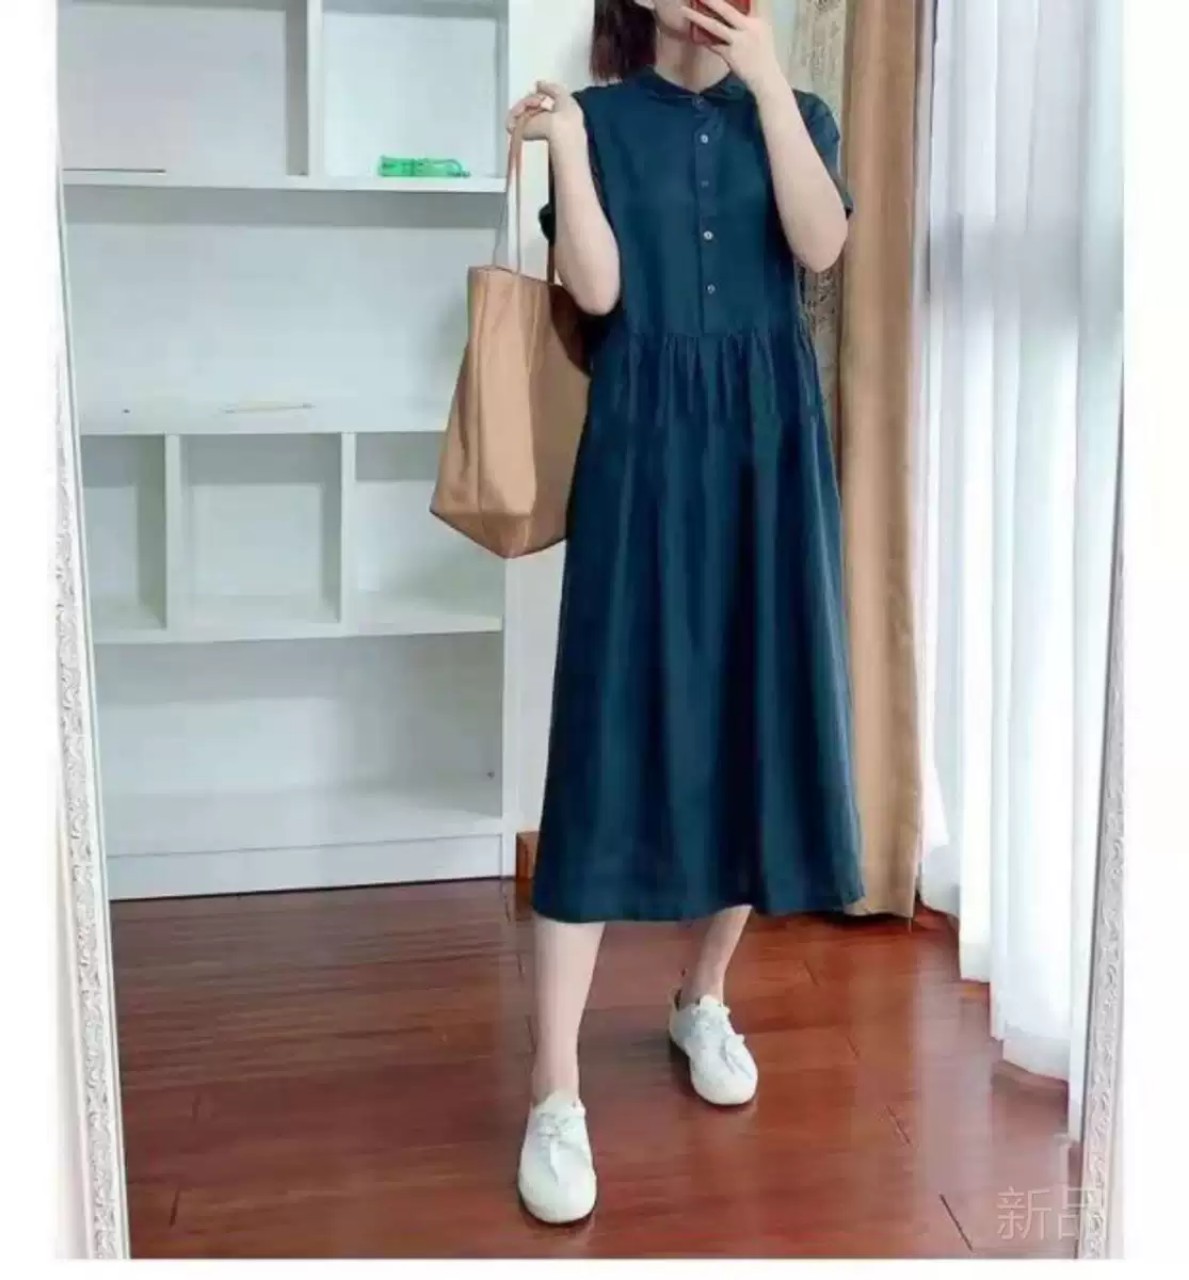 Váy Sơ Mi Thiết Kế Nhún Eo Thanh Lịch, Đầm Suông Linen Ngắn Tay Thời Trang Mùa Thu Đũi Việt